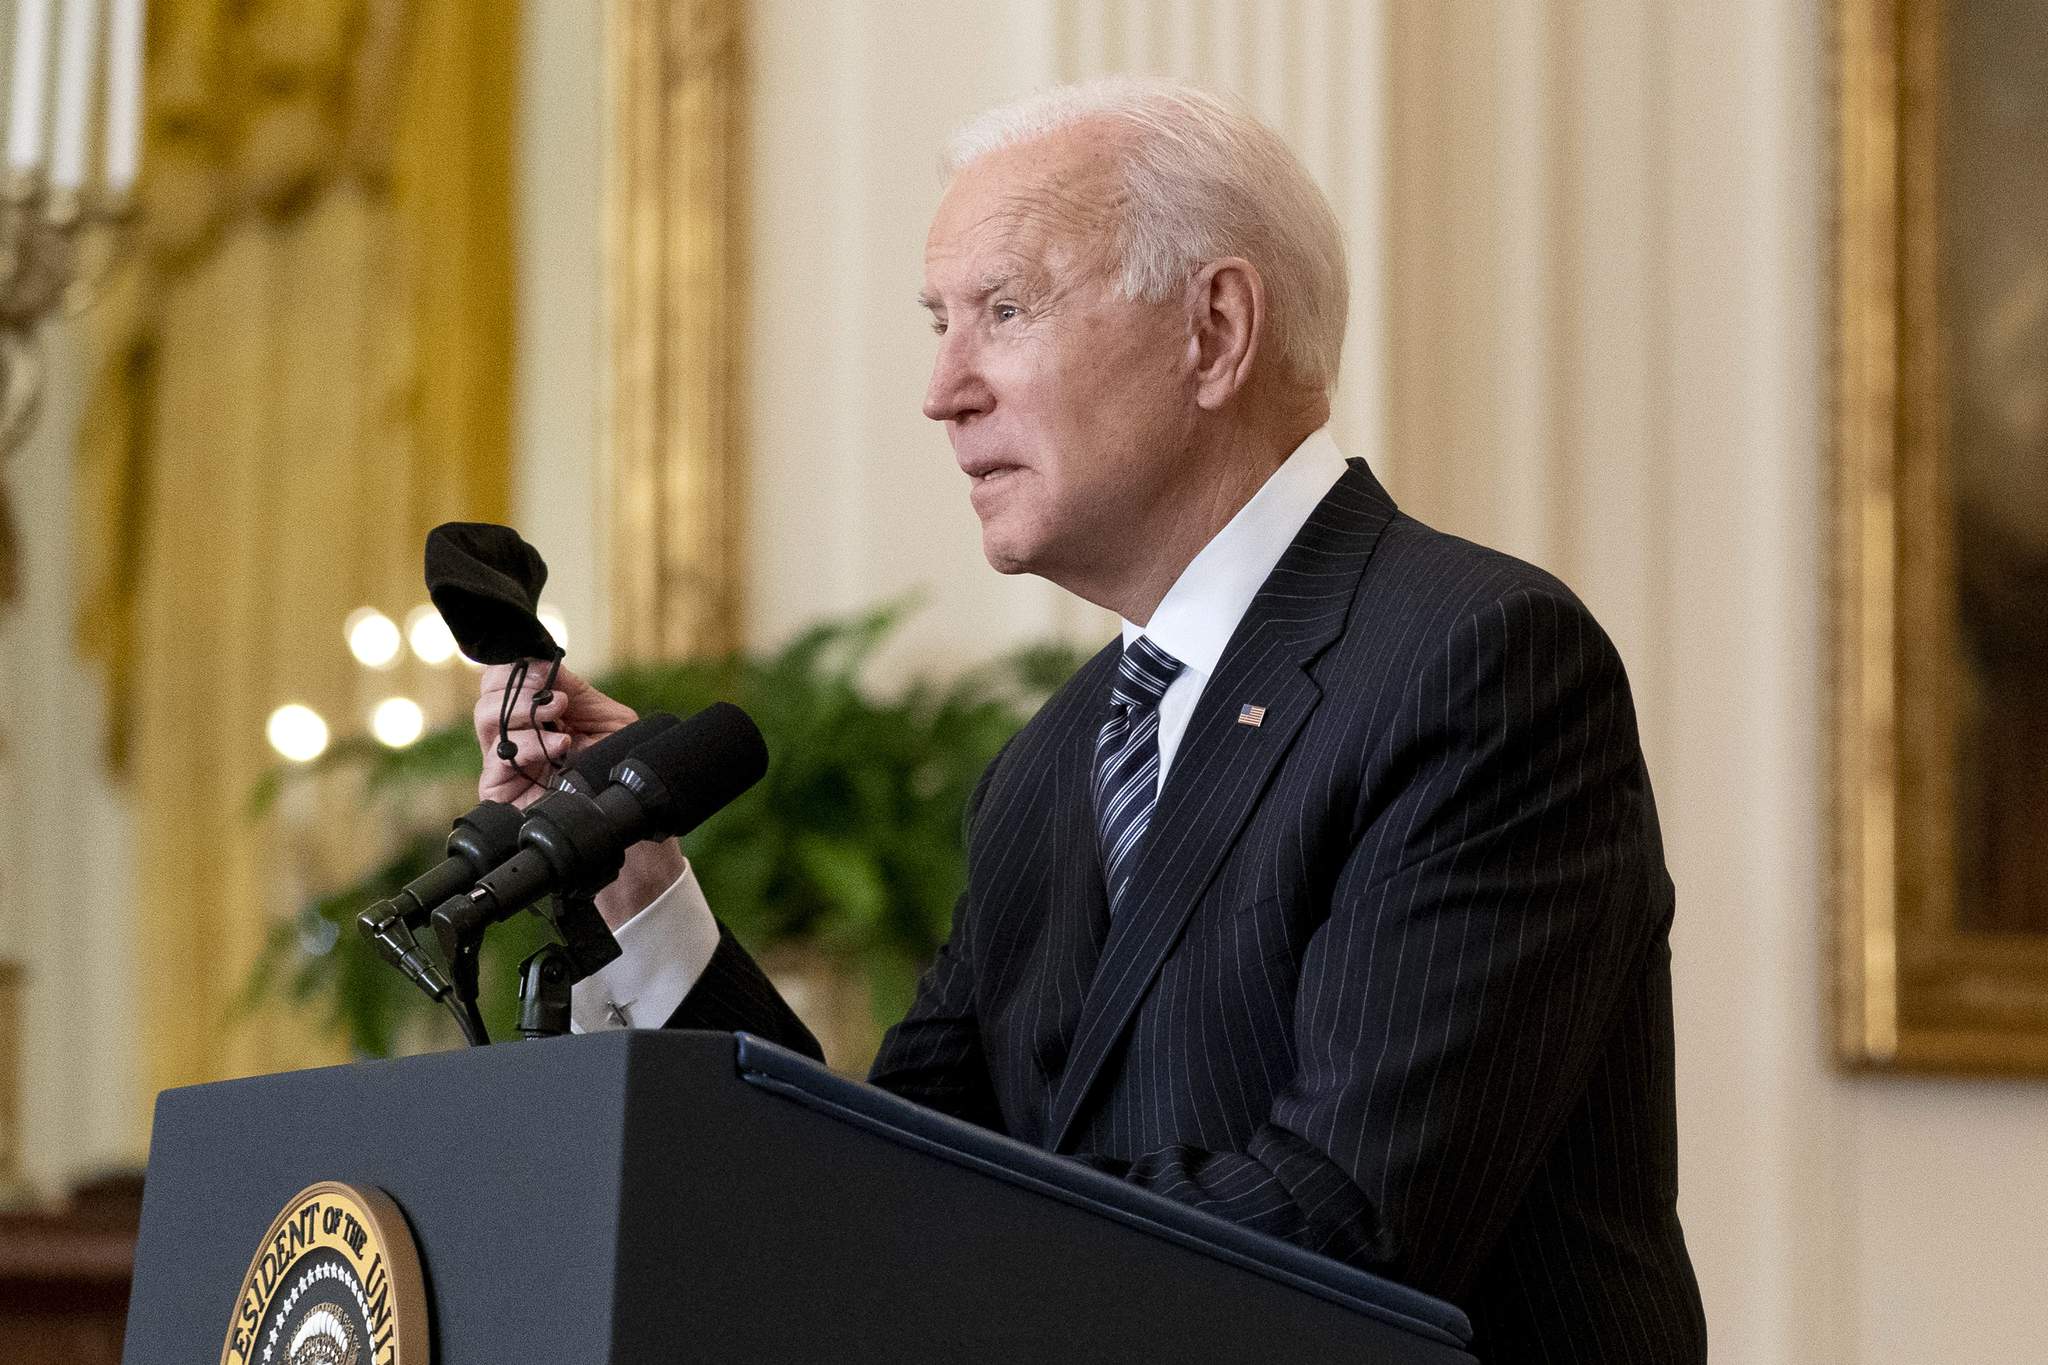 Who deserves credit? Biden leans into pandemic politics